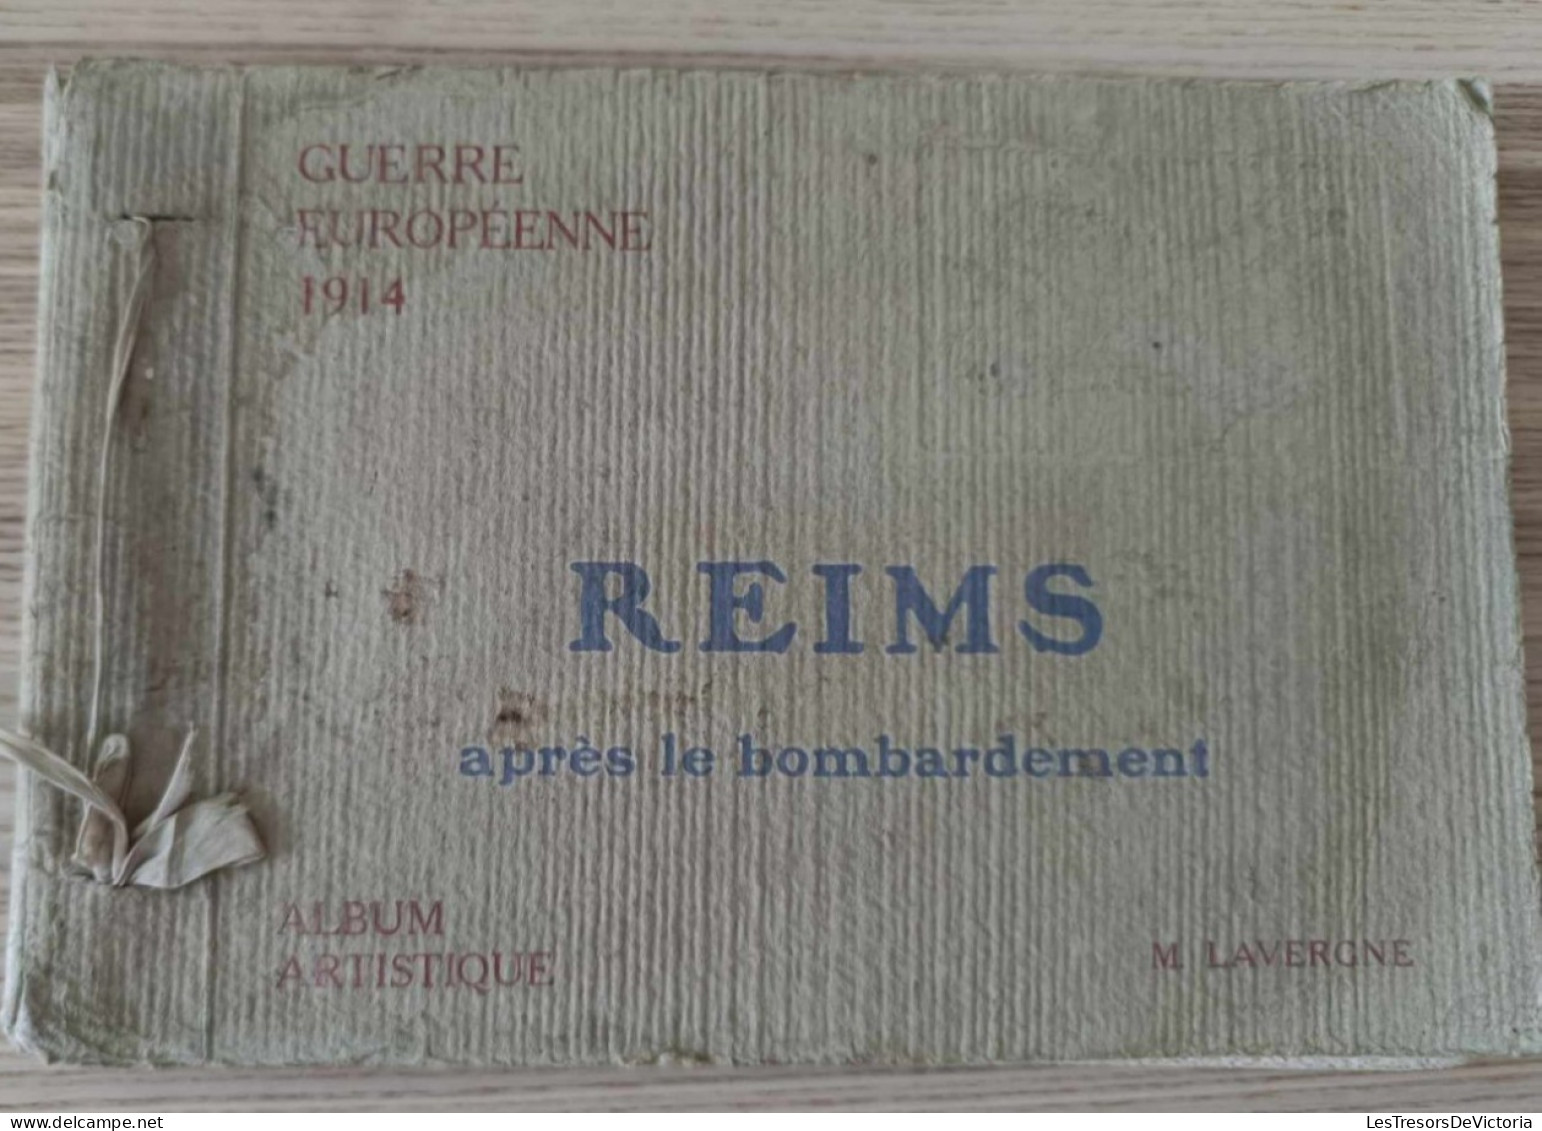 Recceuil De Vues - Reims Après Le Bombardement - Guerre Européenne 1914 - M. Lavergne - Album Artistique - Oorlog 1914-18